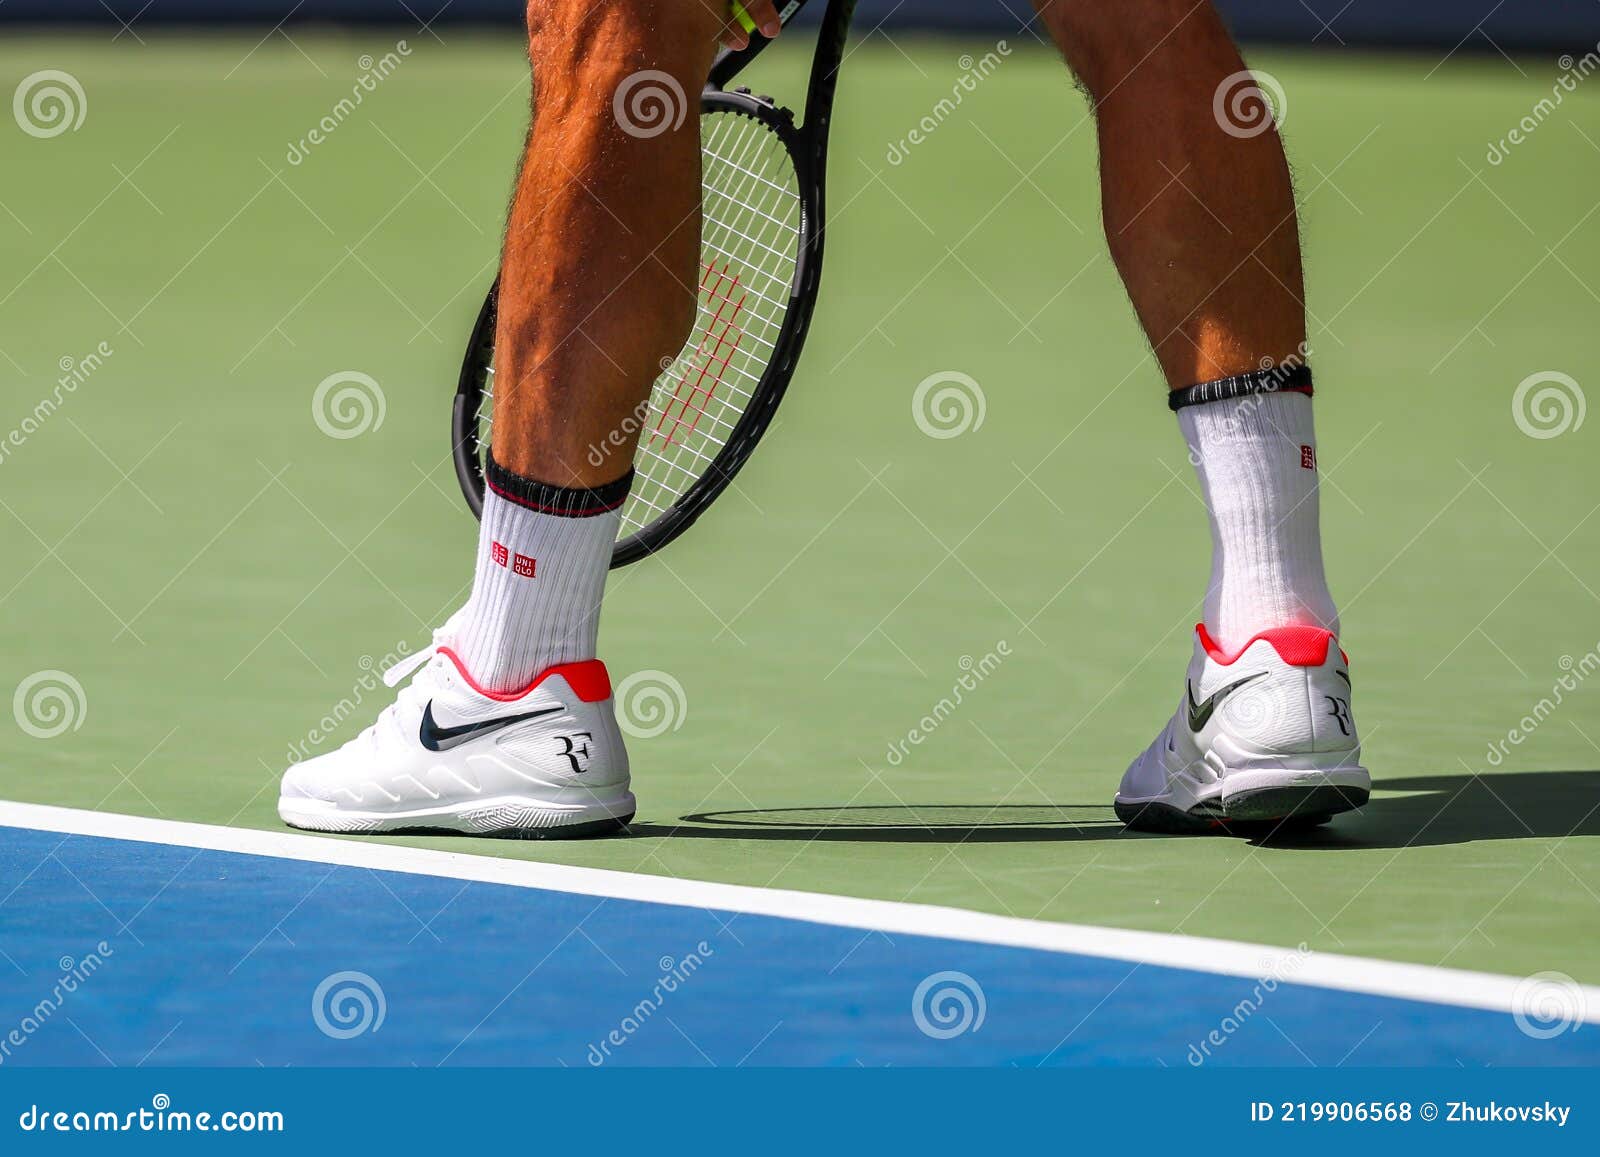 Roger Federer, Campeón Slam 20 Ocasiones De Suiza, Viste Zapatos De Tenis Nike Personalizados Durante El Partido De L de archivo editorial - Imagen de corte, ceremonia: 219906568